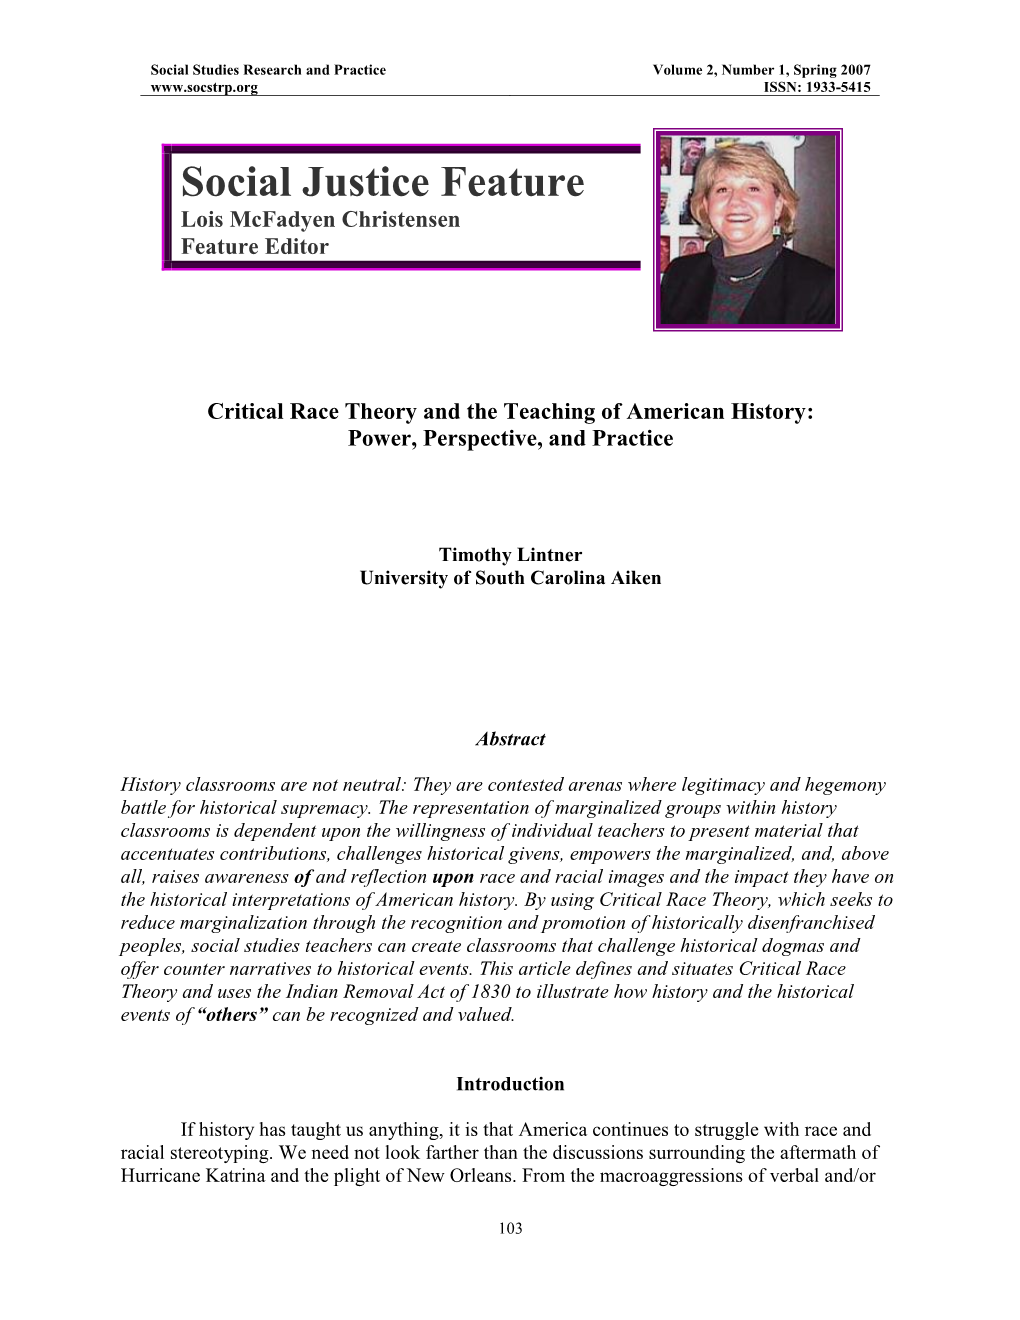 Social Justice Feature Lois Mcfadyen Christensen Feature Editor